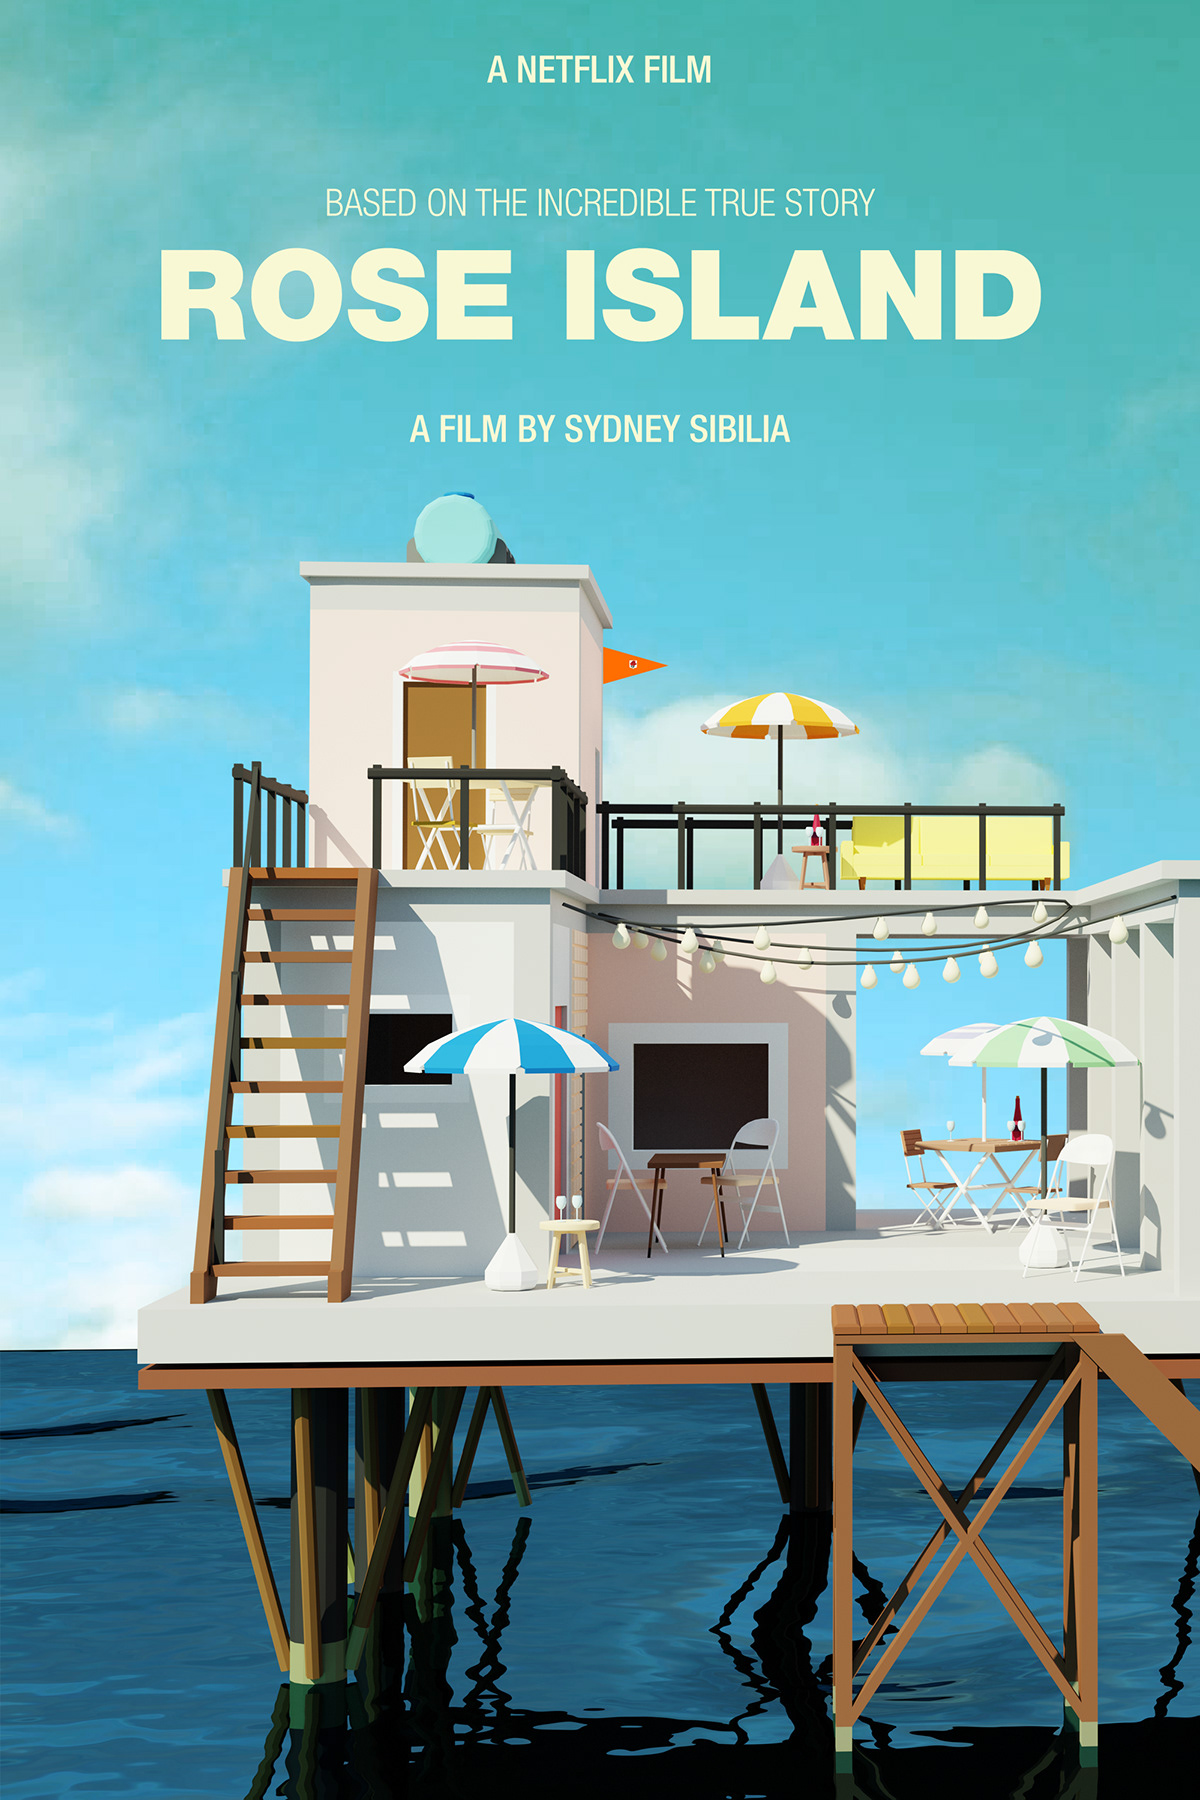 3dart 3dmodel Blenderart Island movieposter poster posterdesign Render rose roseisland